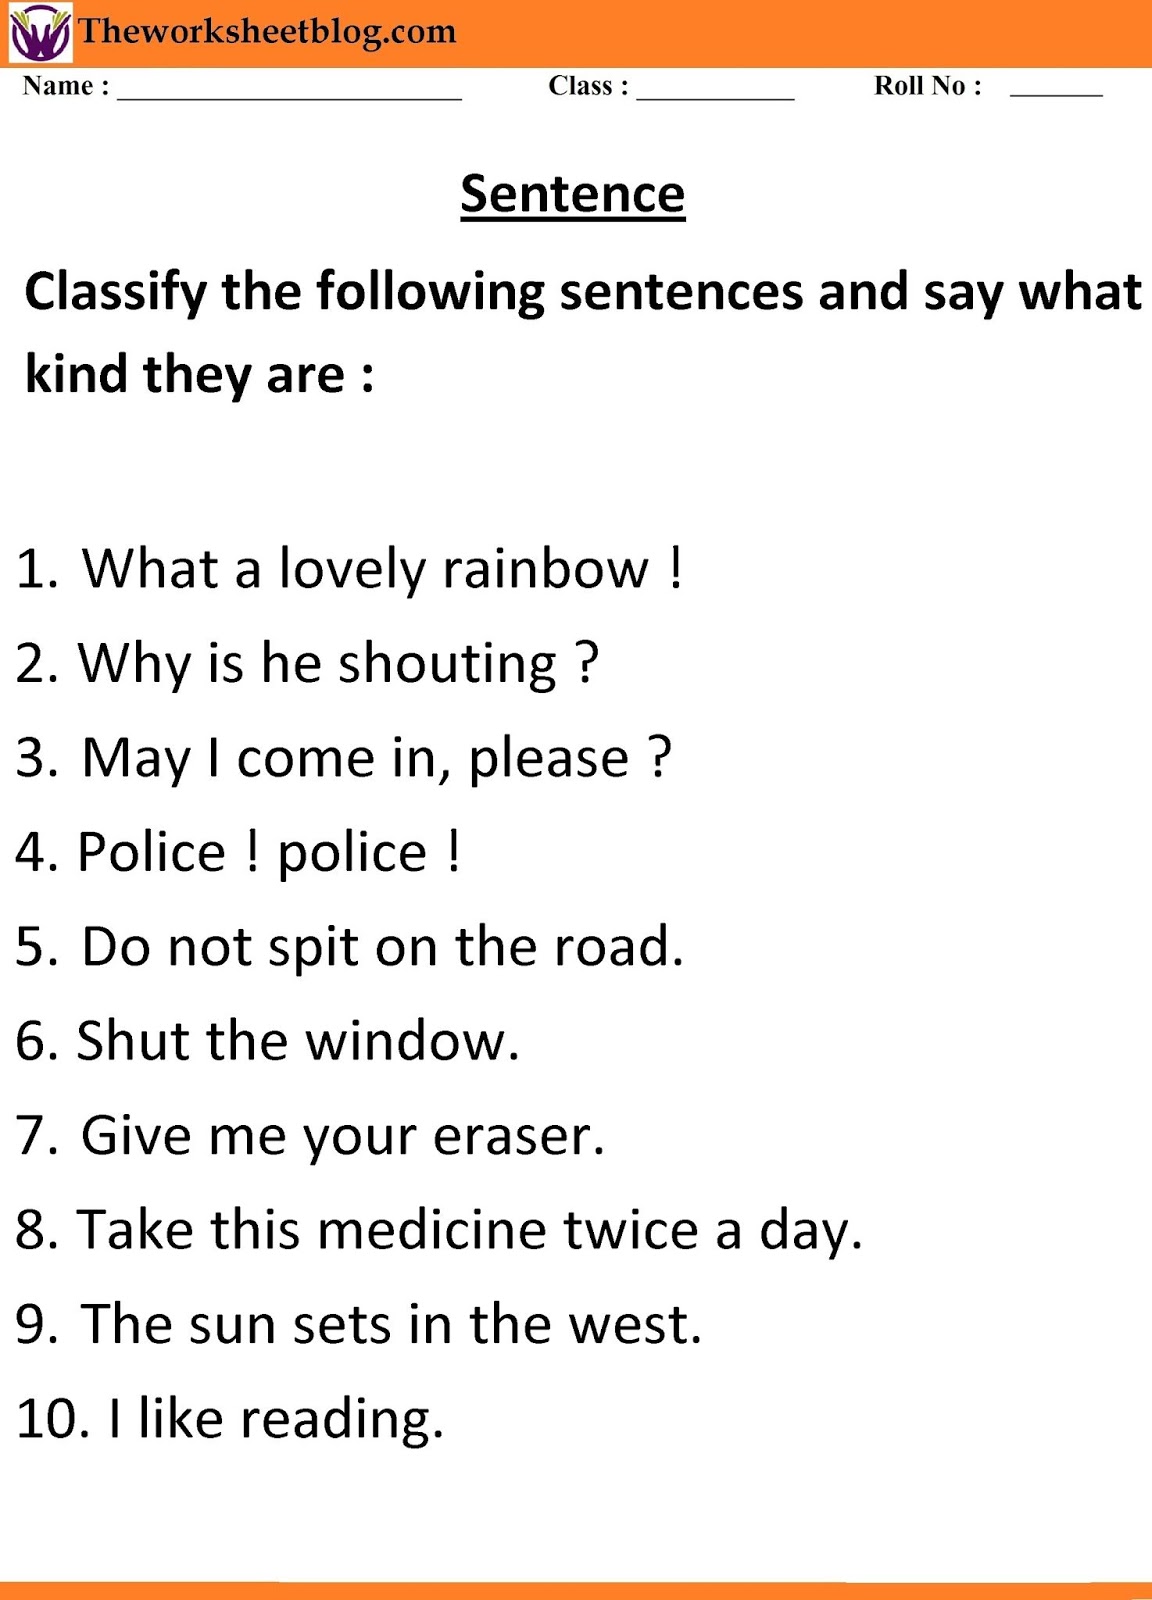 Sentence and kind of sentences worksheet. Pertaining To Kinds Of Sentences Worksheet